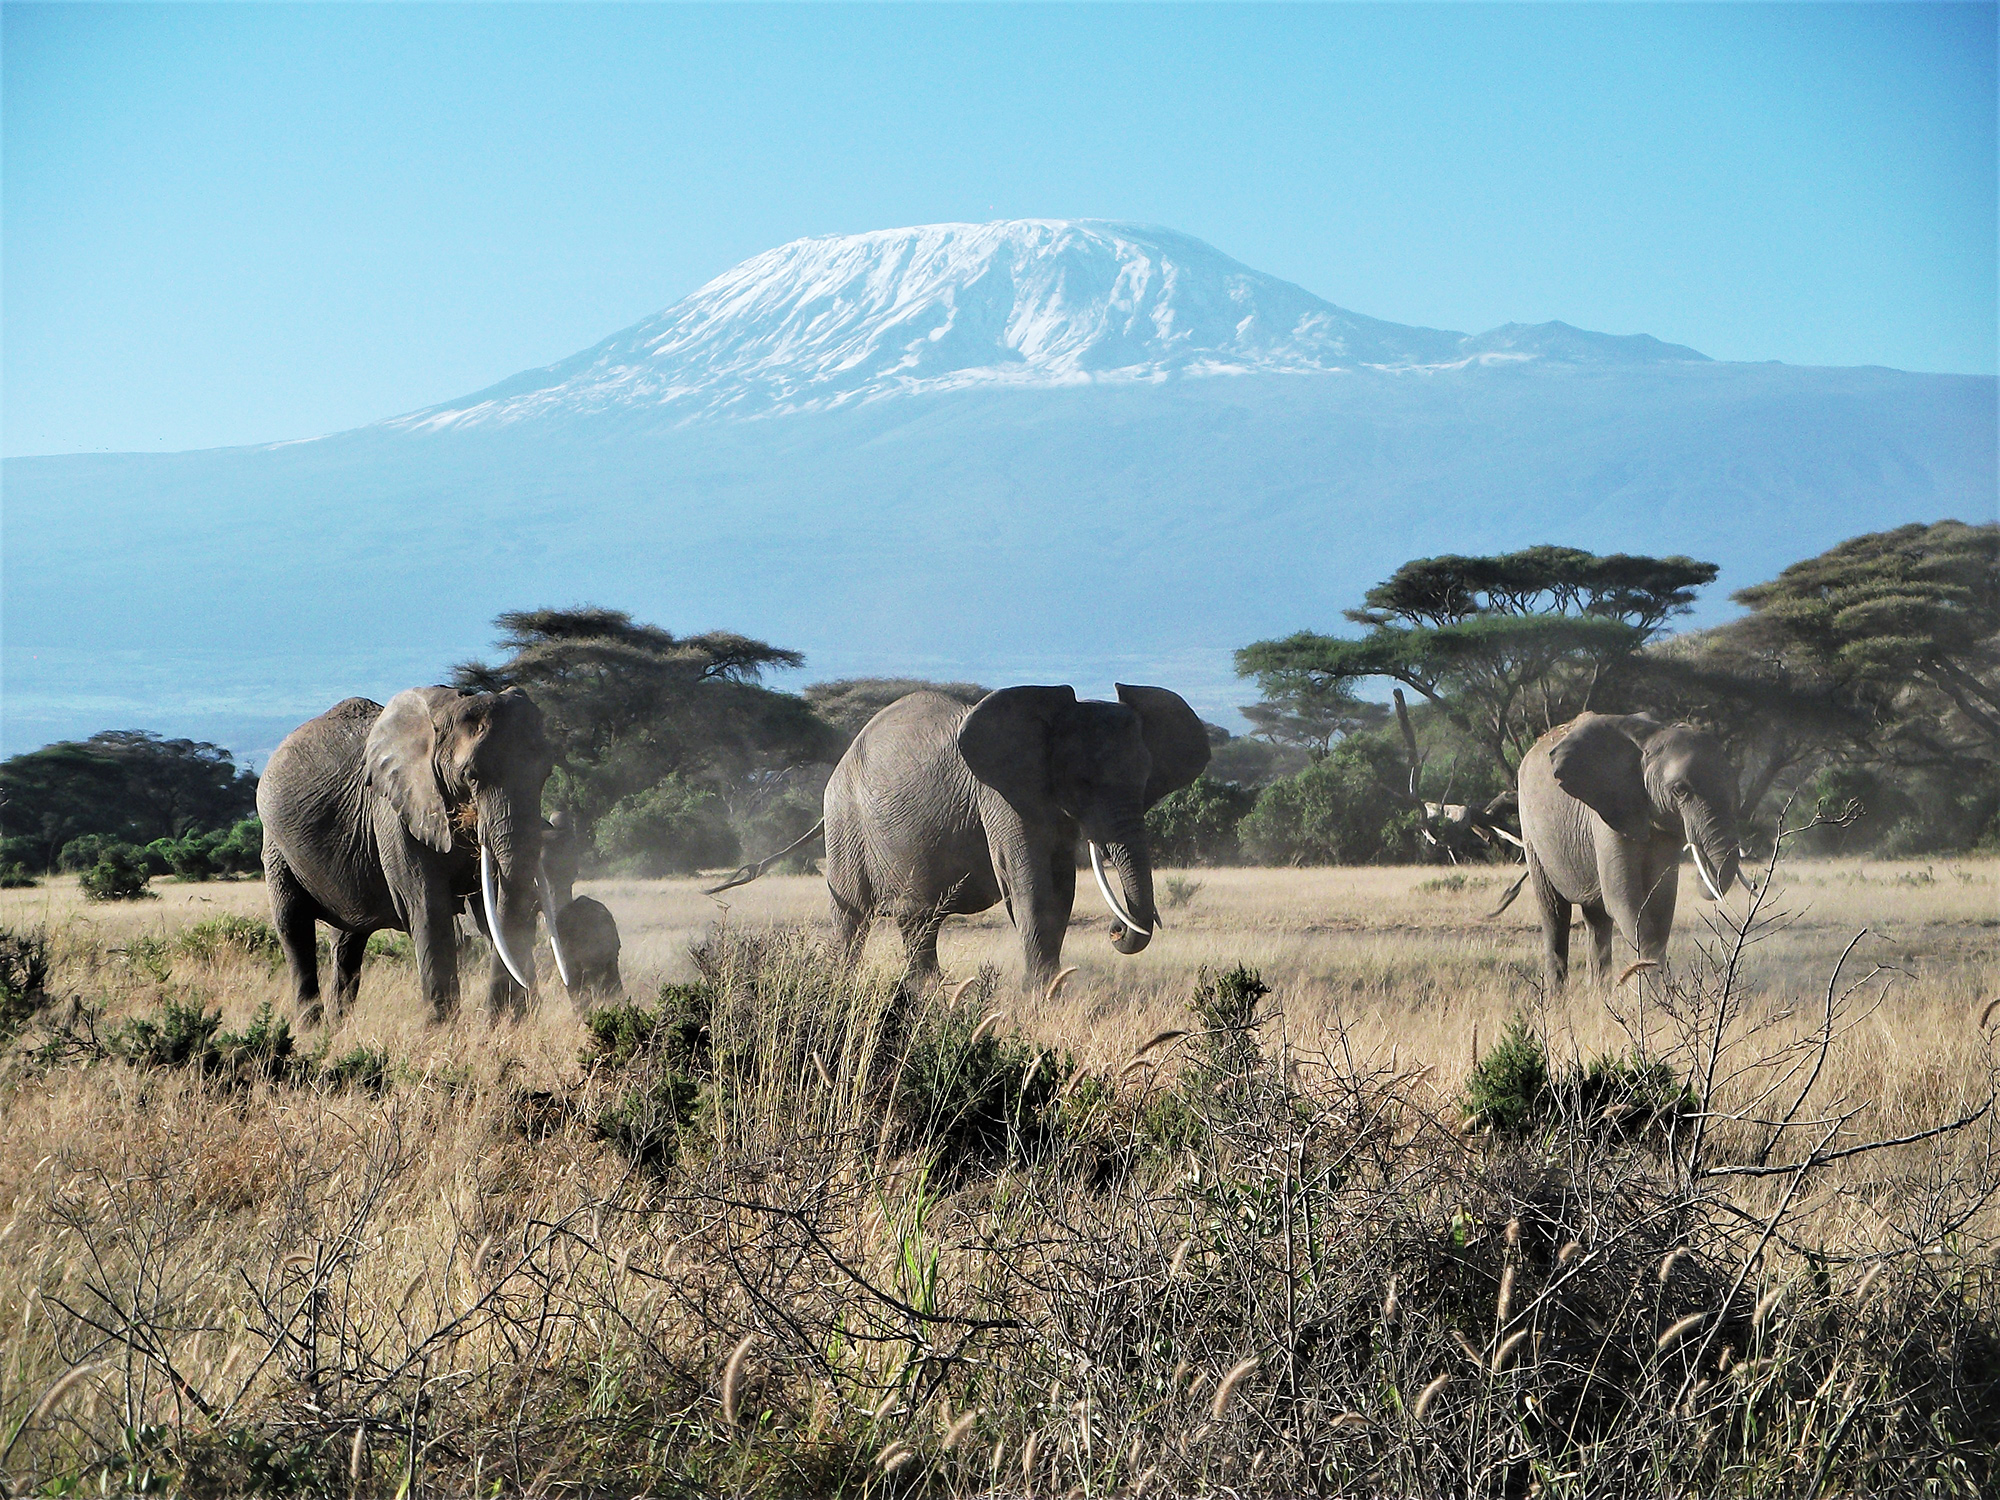 アフリカゾウの楽園、キリマンジャロを望むアンボセリ国立公園(ケニア) VOYAGE 世界見聞録